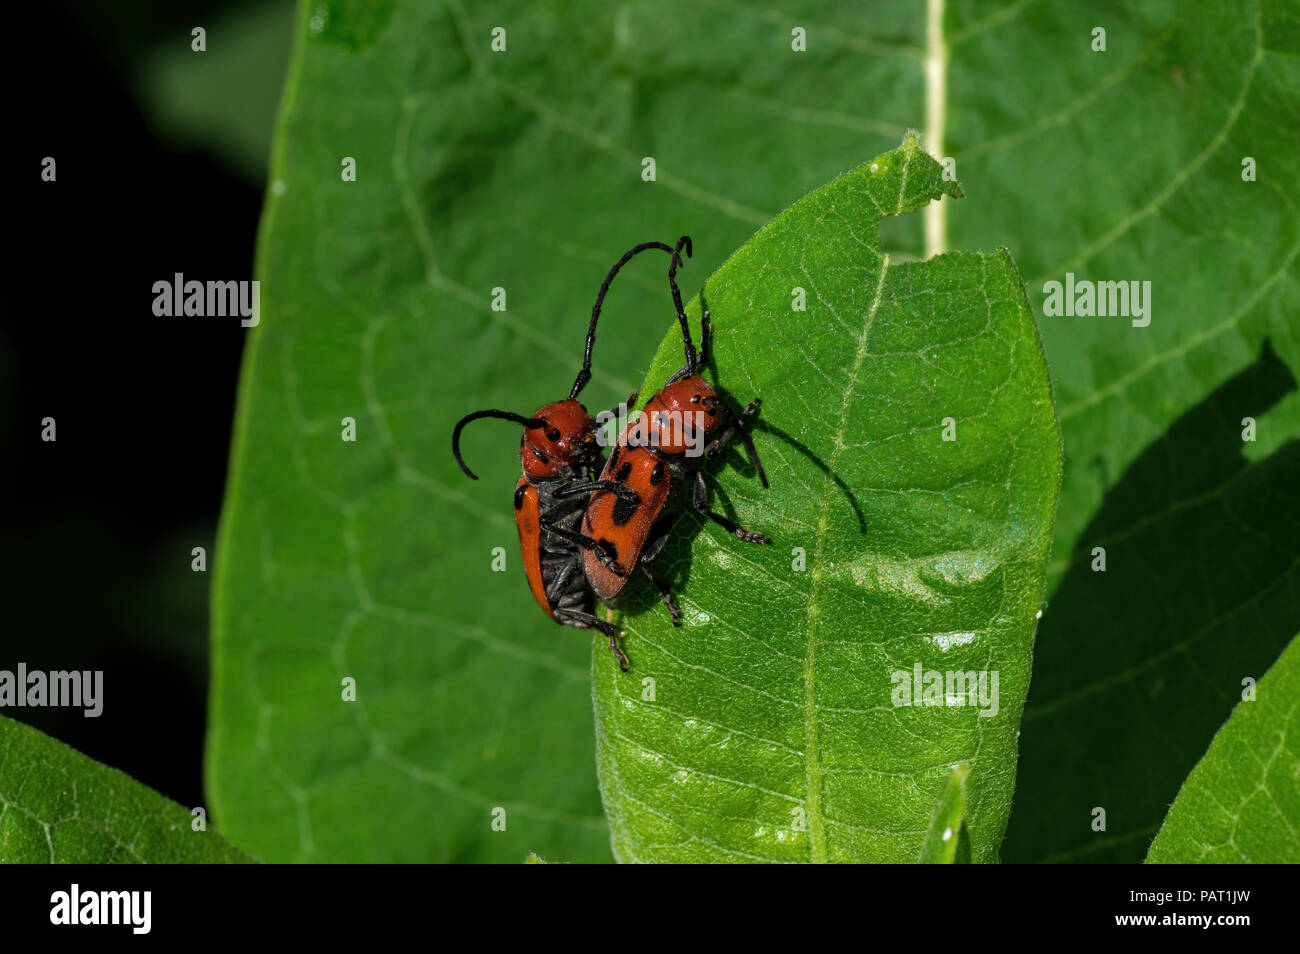 Red milkweed beetles eating milkweed leaves. It is a beetle in the family Cerambycidae. Stock Photo